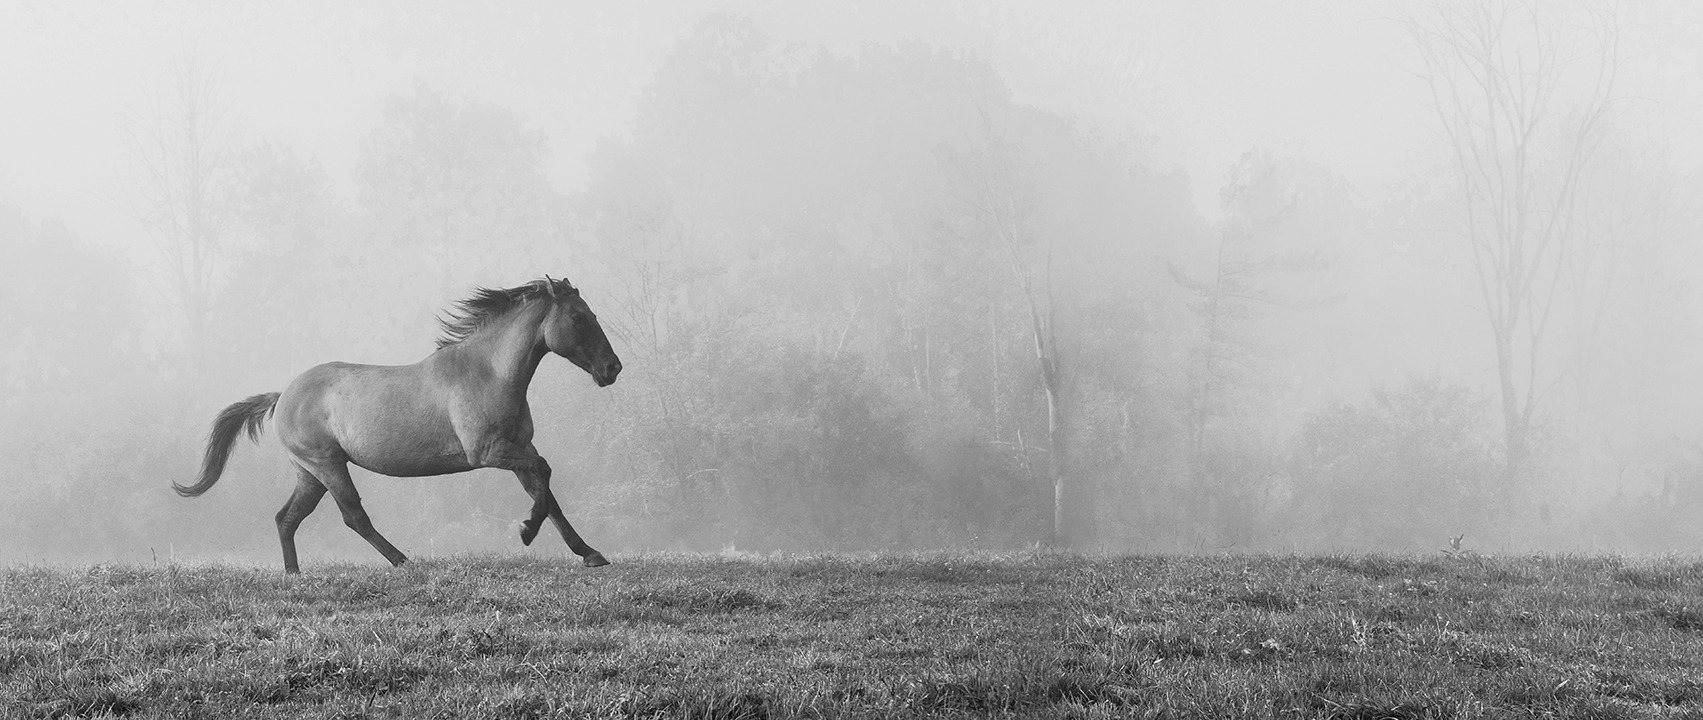 Sandra Kaplan  - Horse in Fog